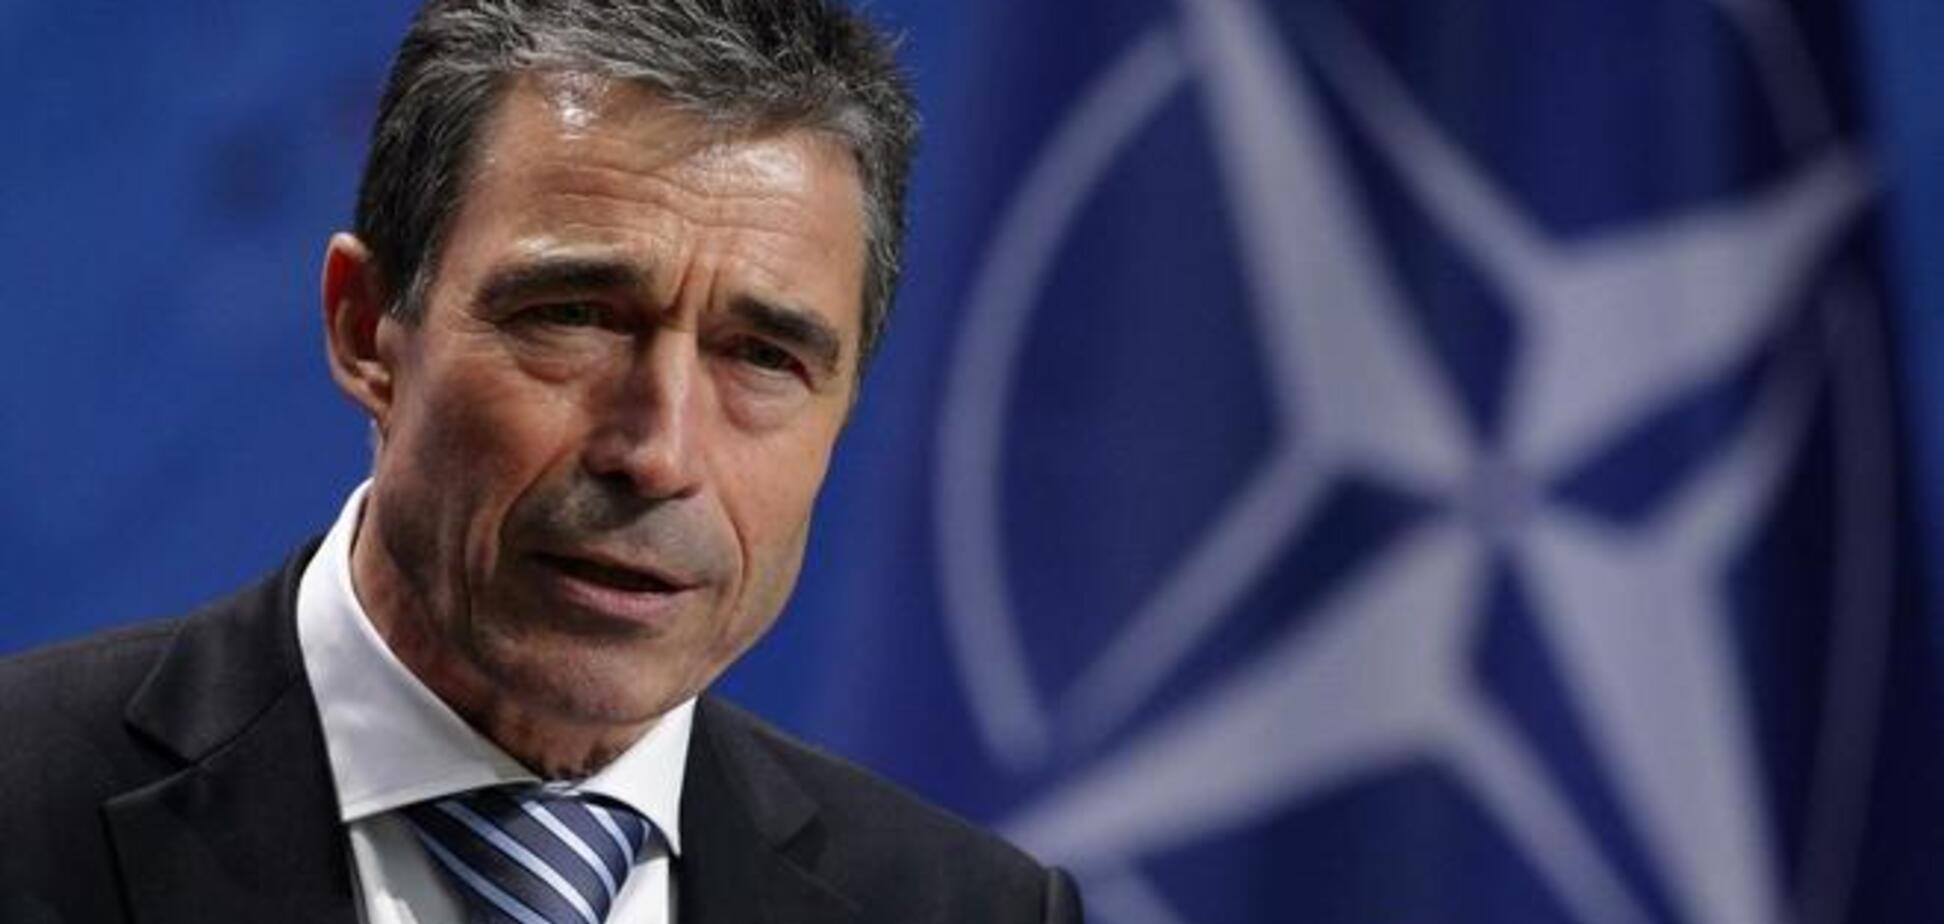 НАТО готове прийняти додаткові заходи для стримування Росії